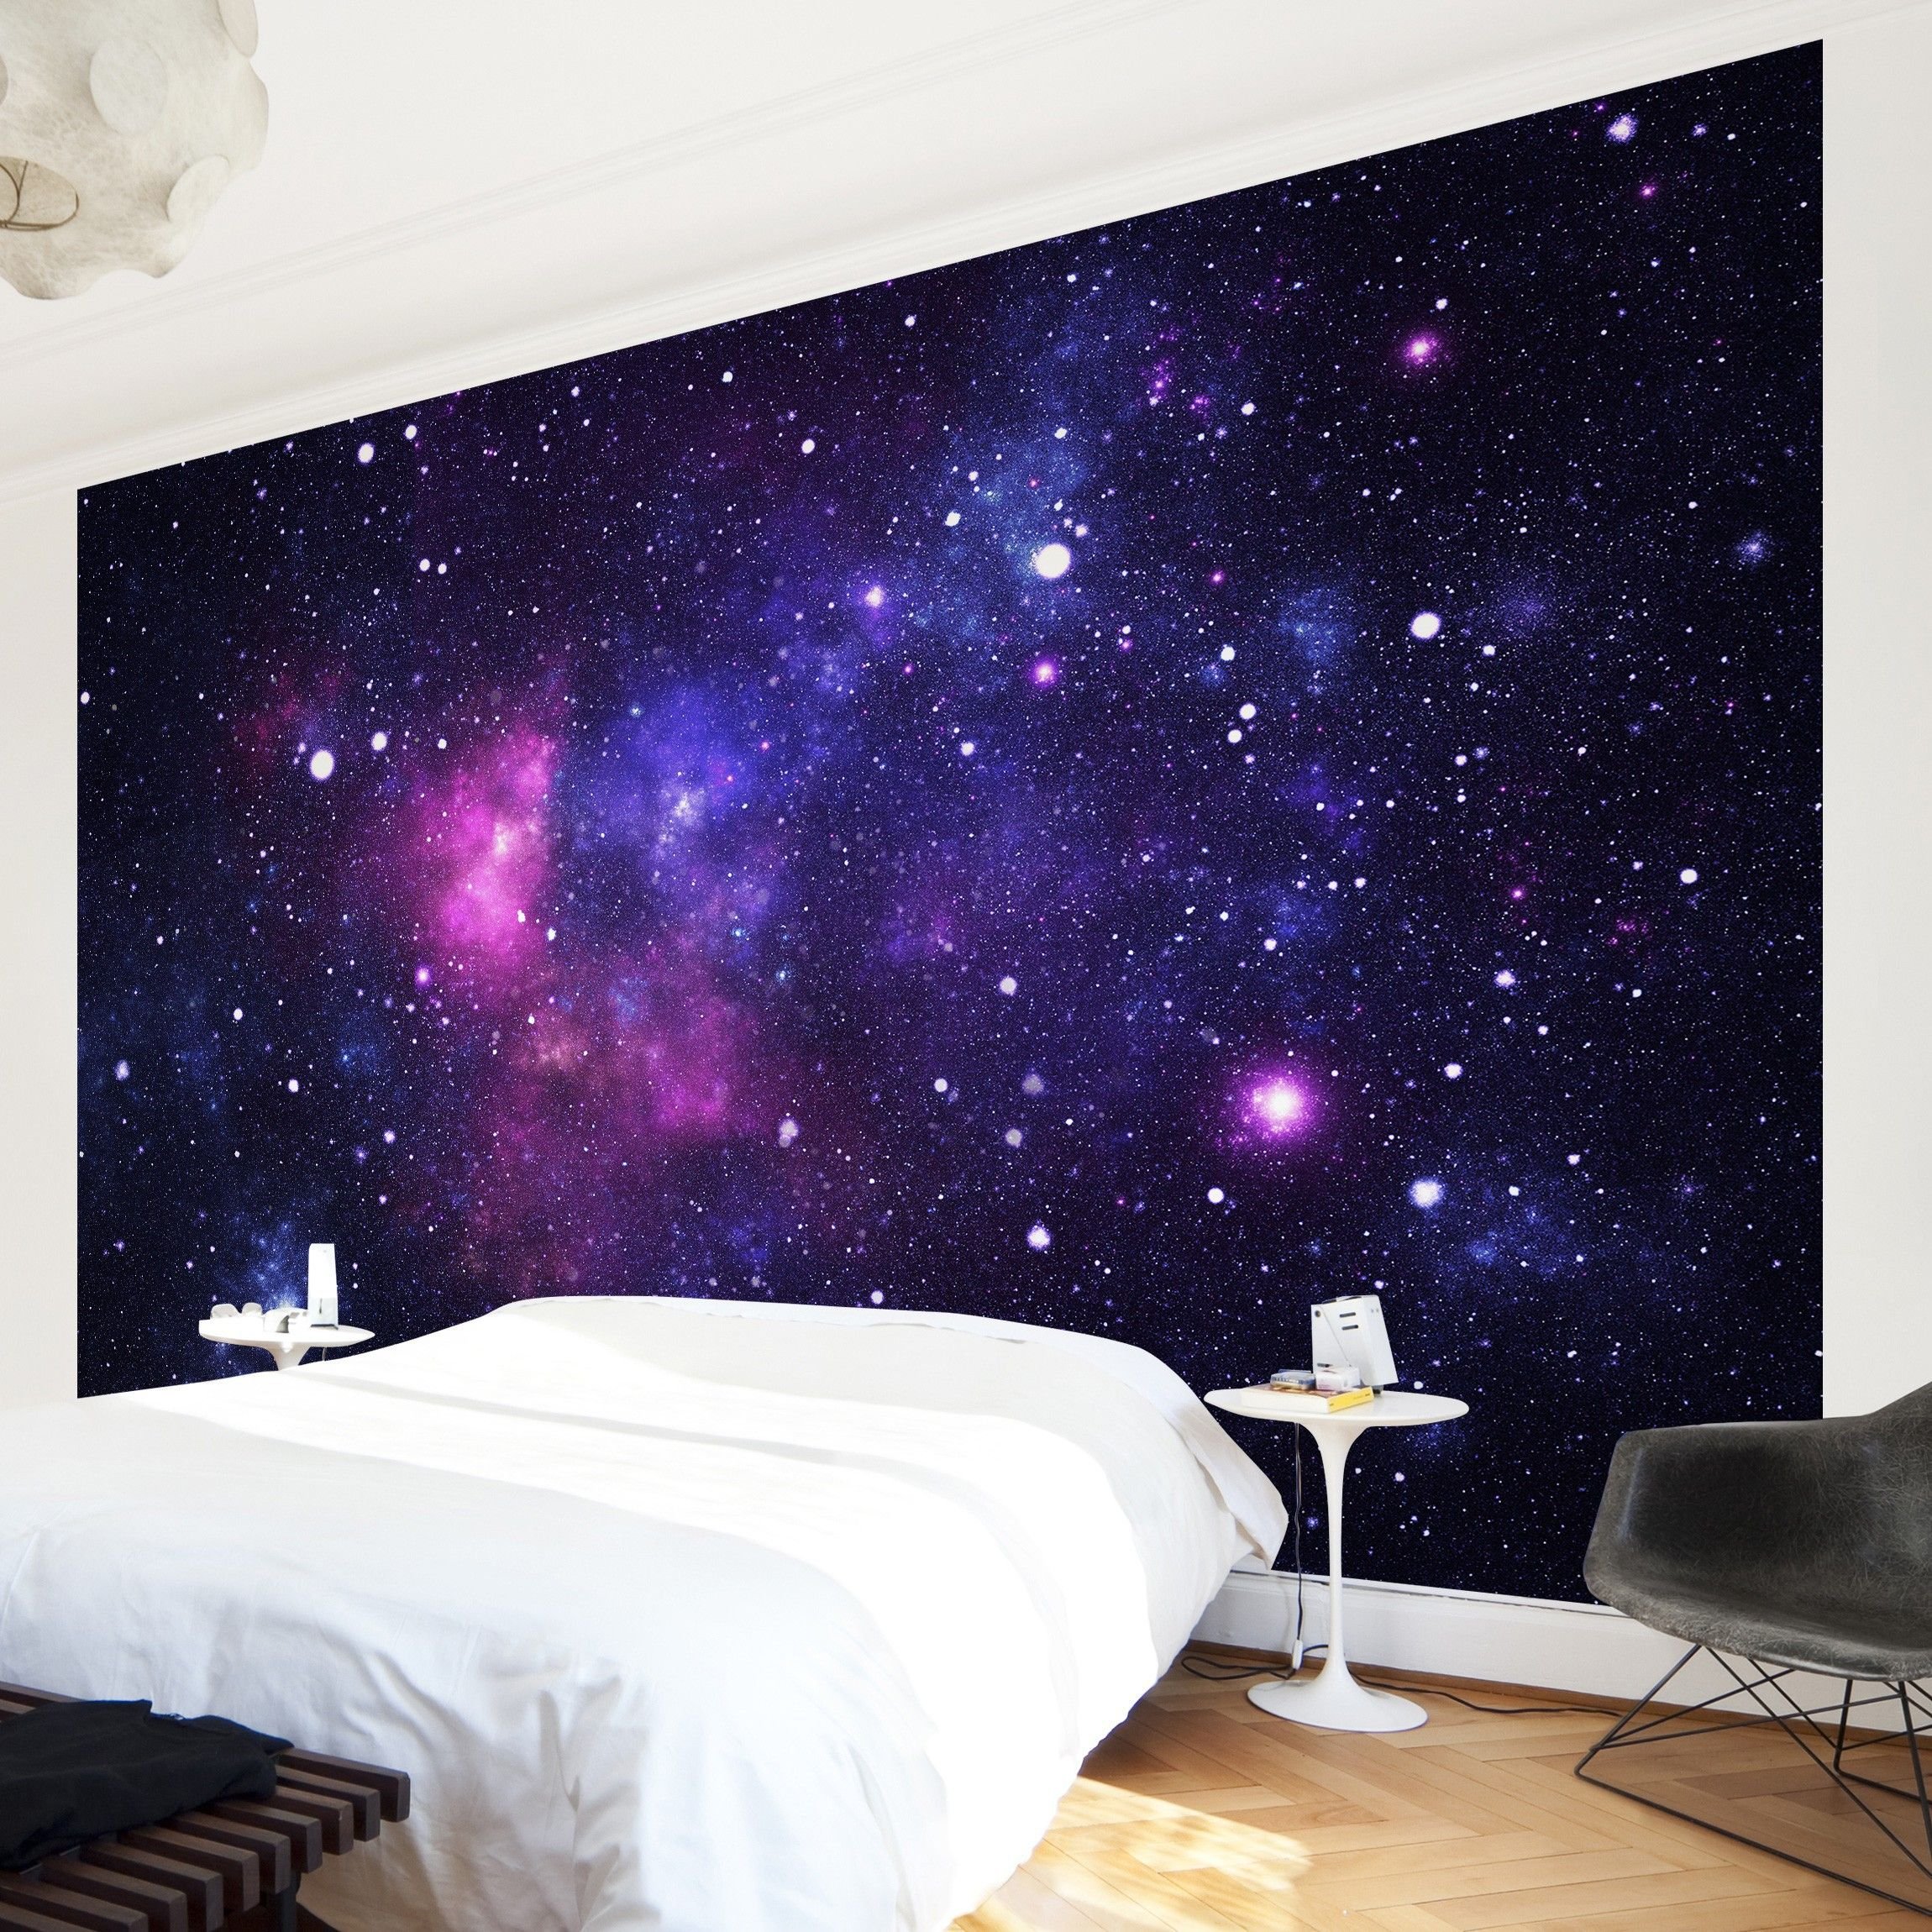 Домашнее звездное небо. Комната в стиле космос. Космический интерьер комнаты. Спальня в стиле космос. Стена в стиле космос.